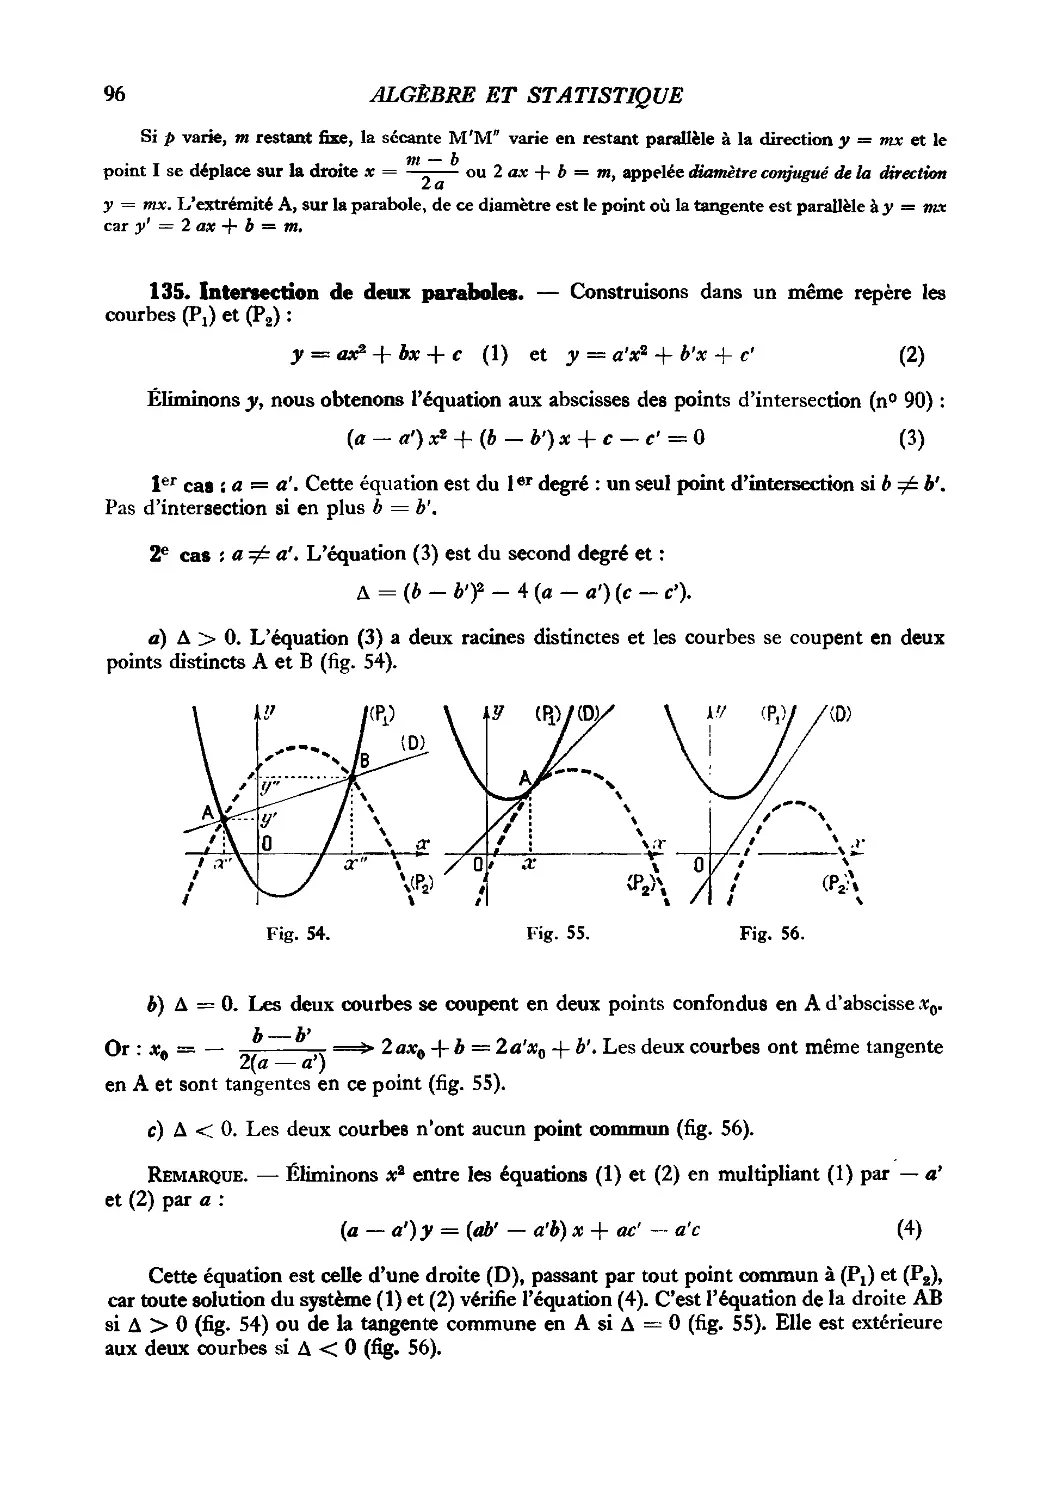 135. Intersection de deux paraboles